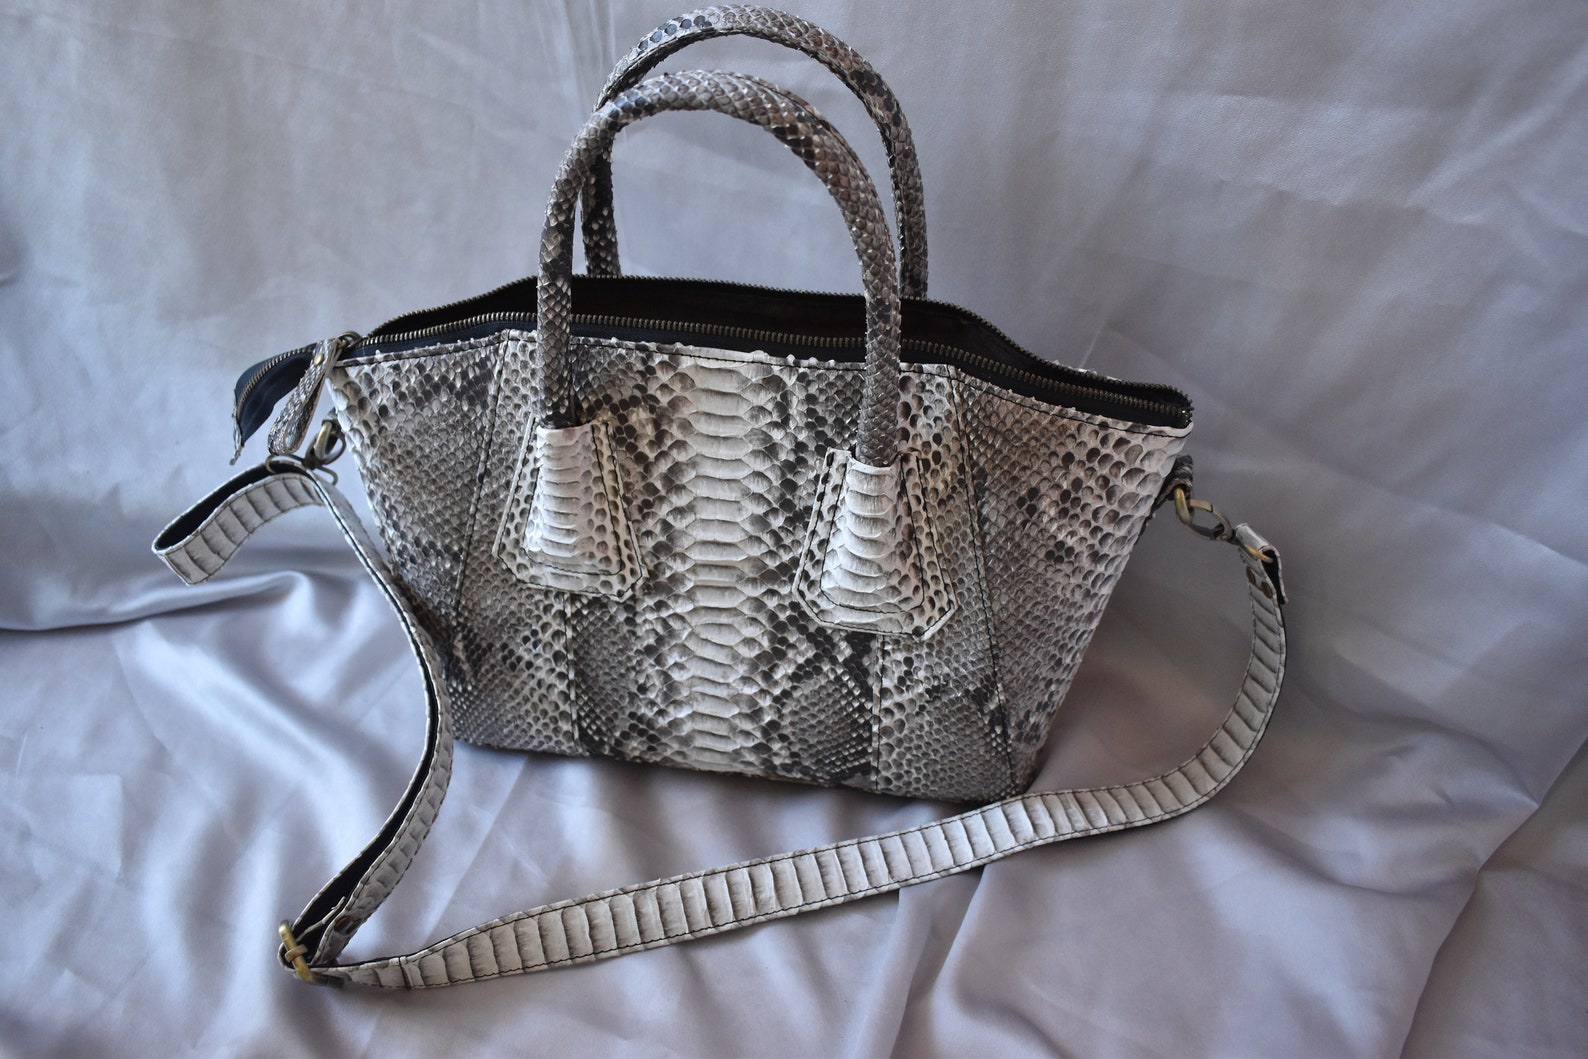 Snake skin designer handbags for women Genuine Python leather | Etsy